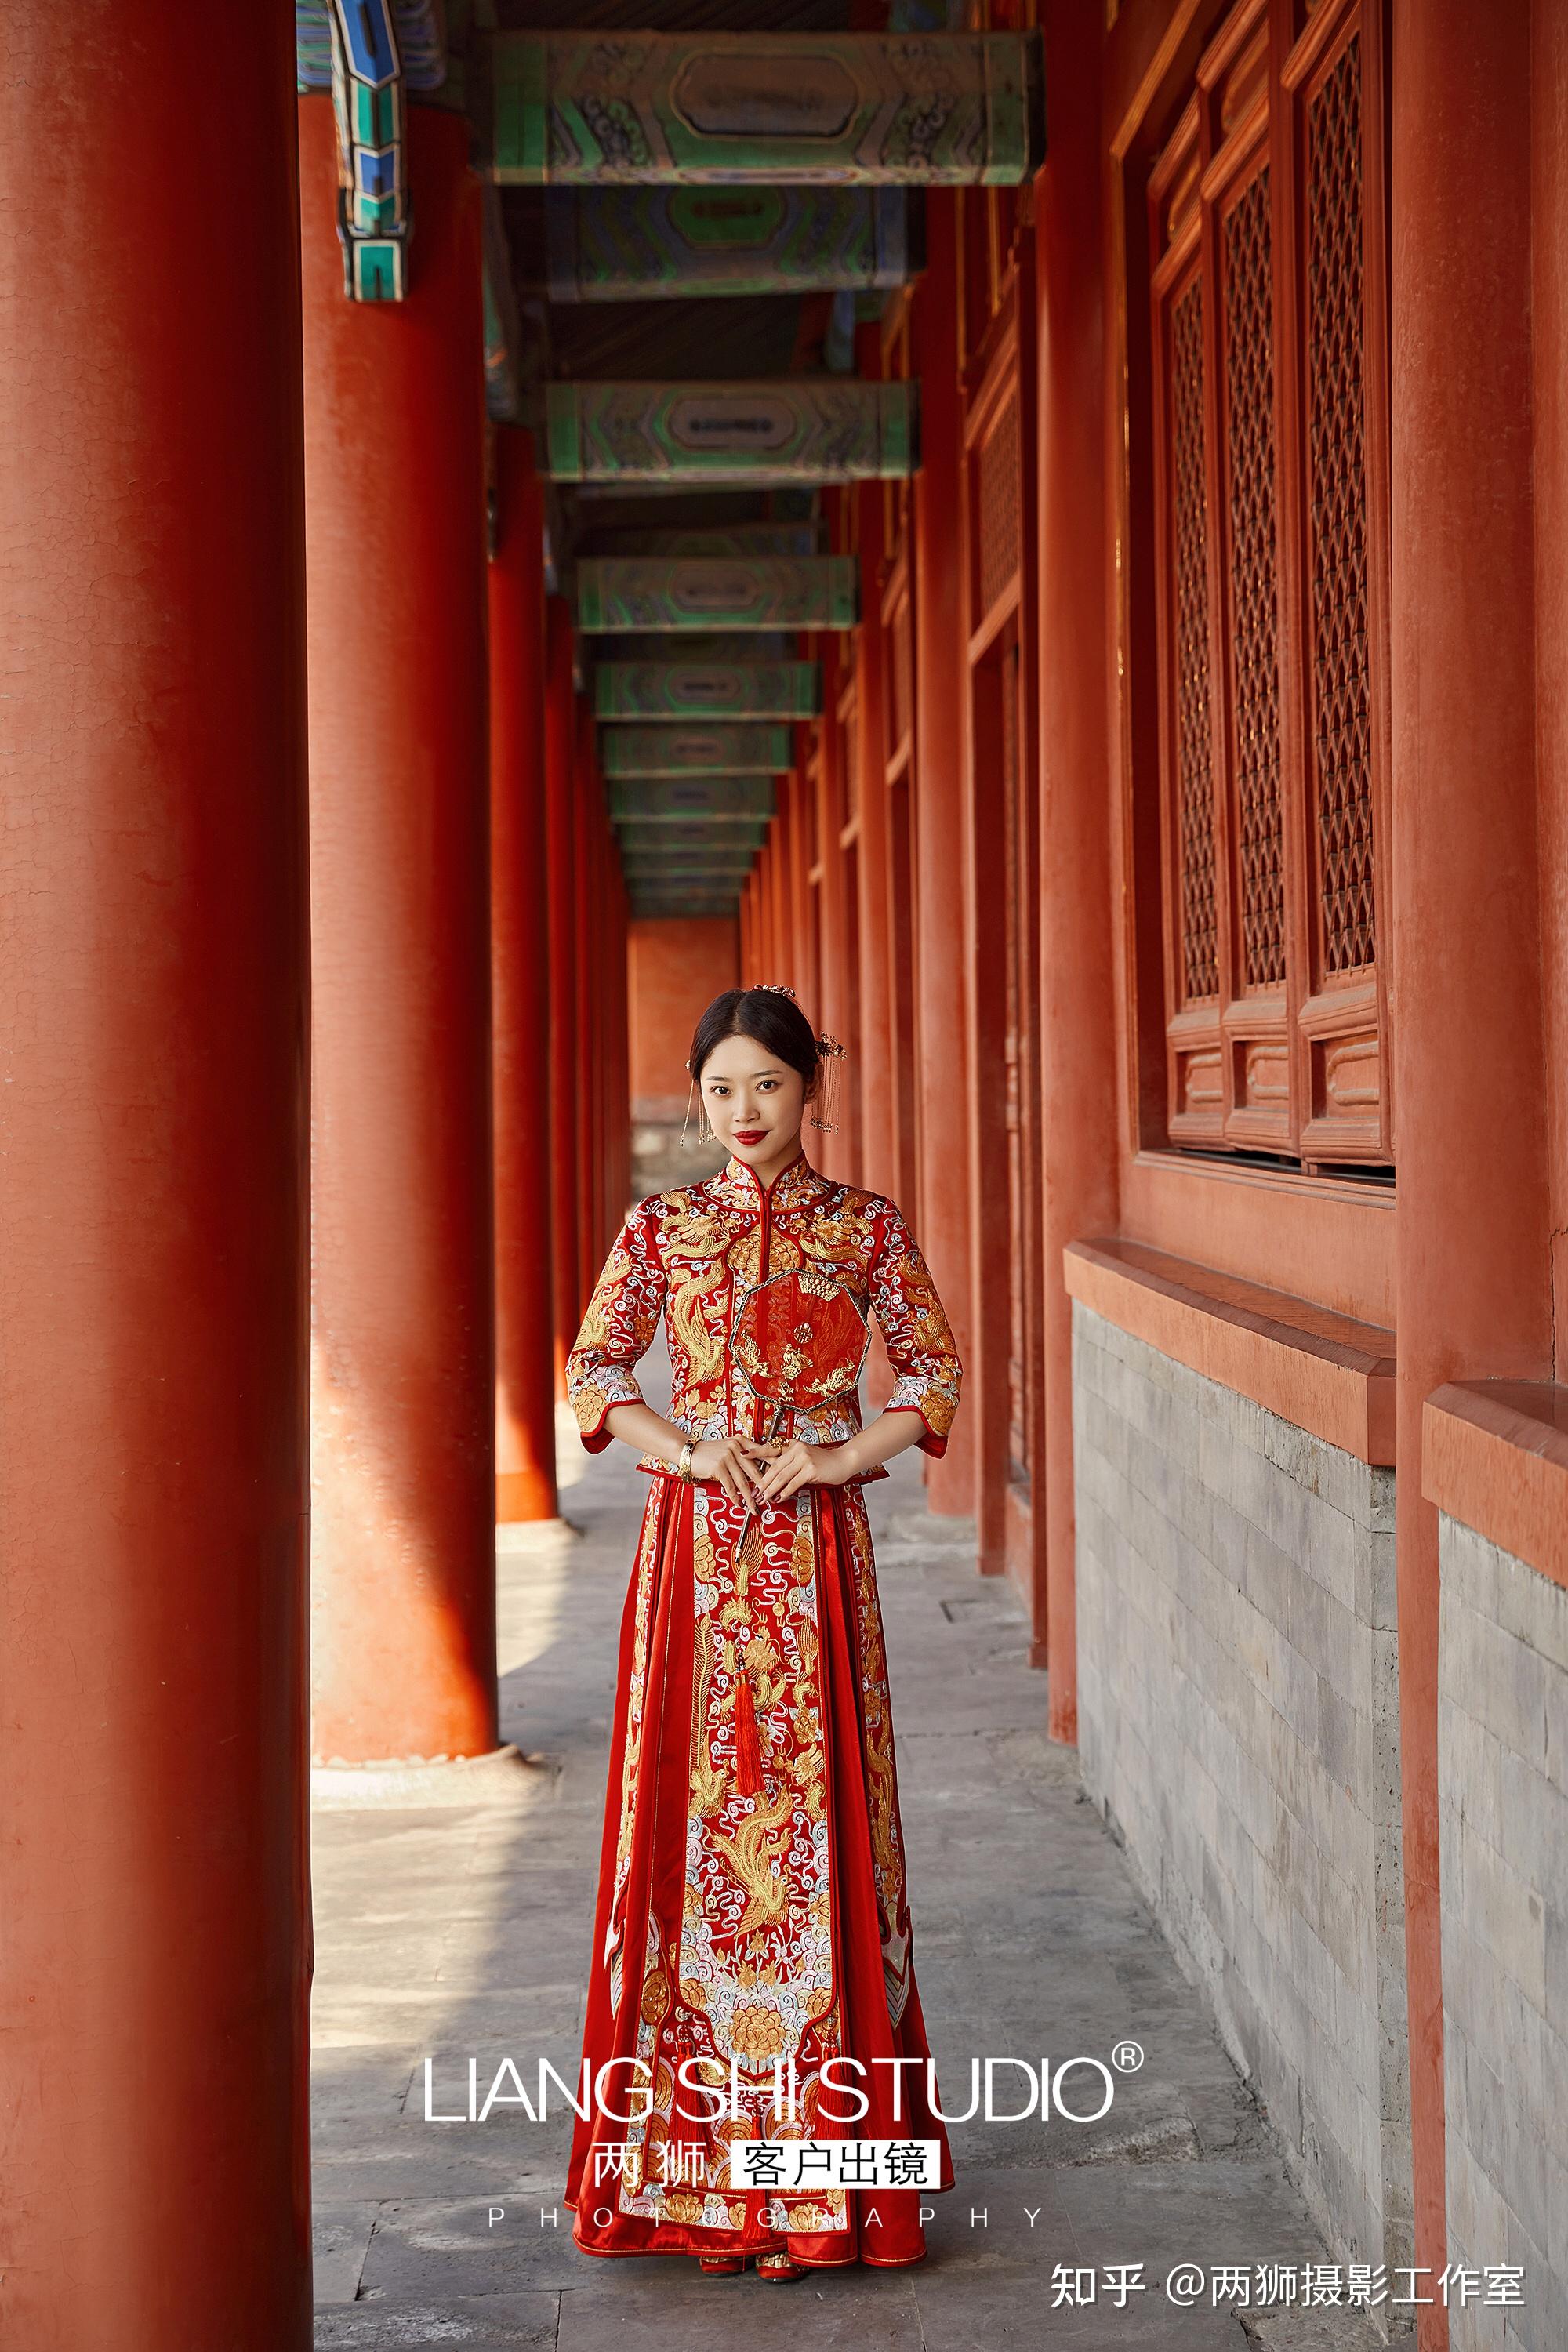 地标:北京外地来拍摄一次即可 \ 中式秀禾服婚纱照 赋予东方新娘无与